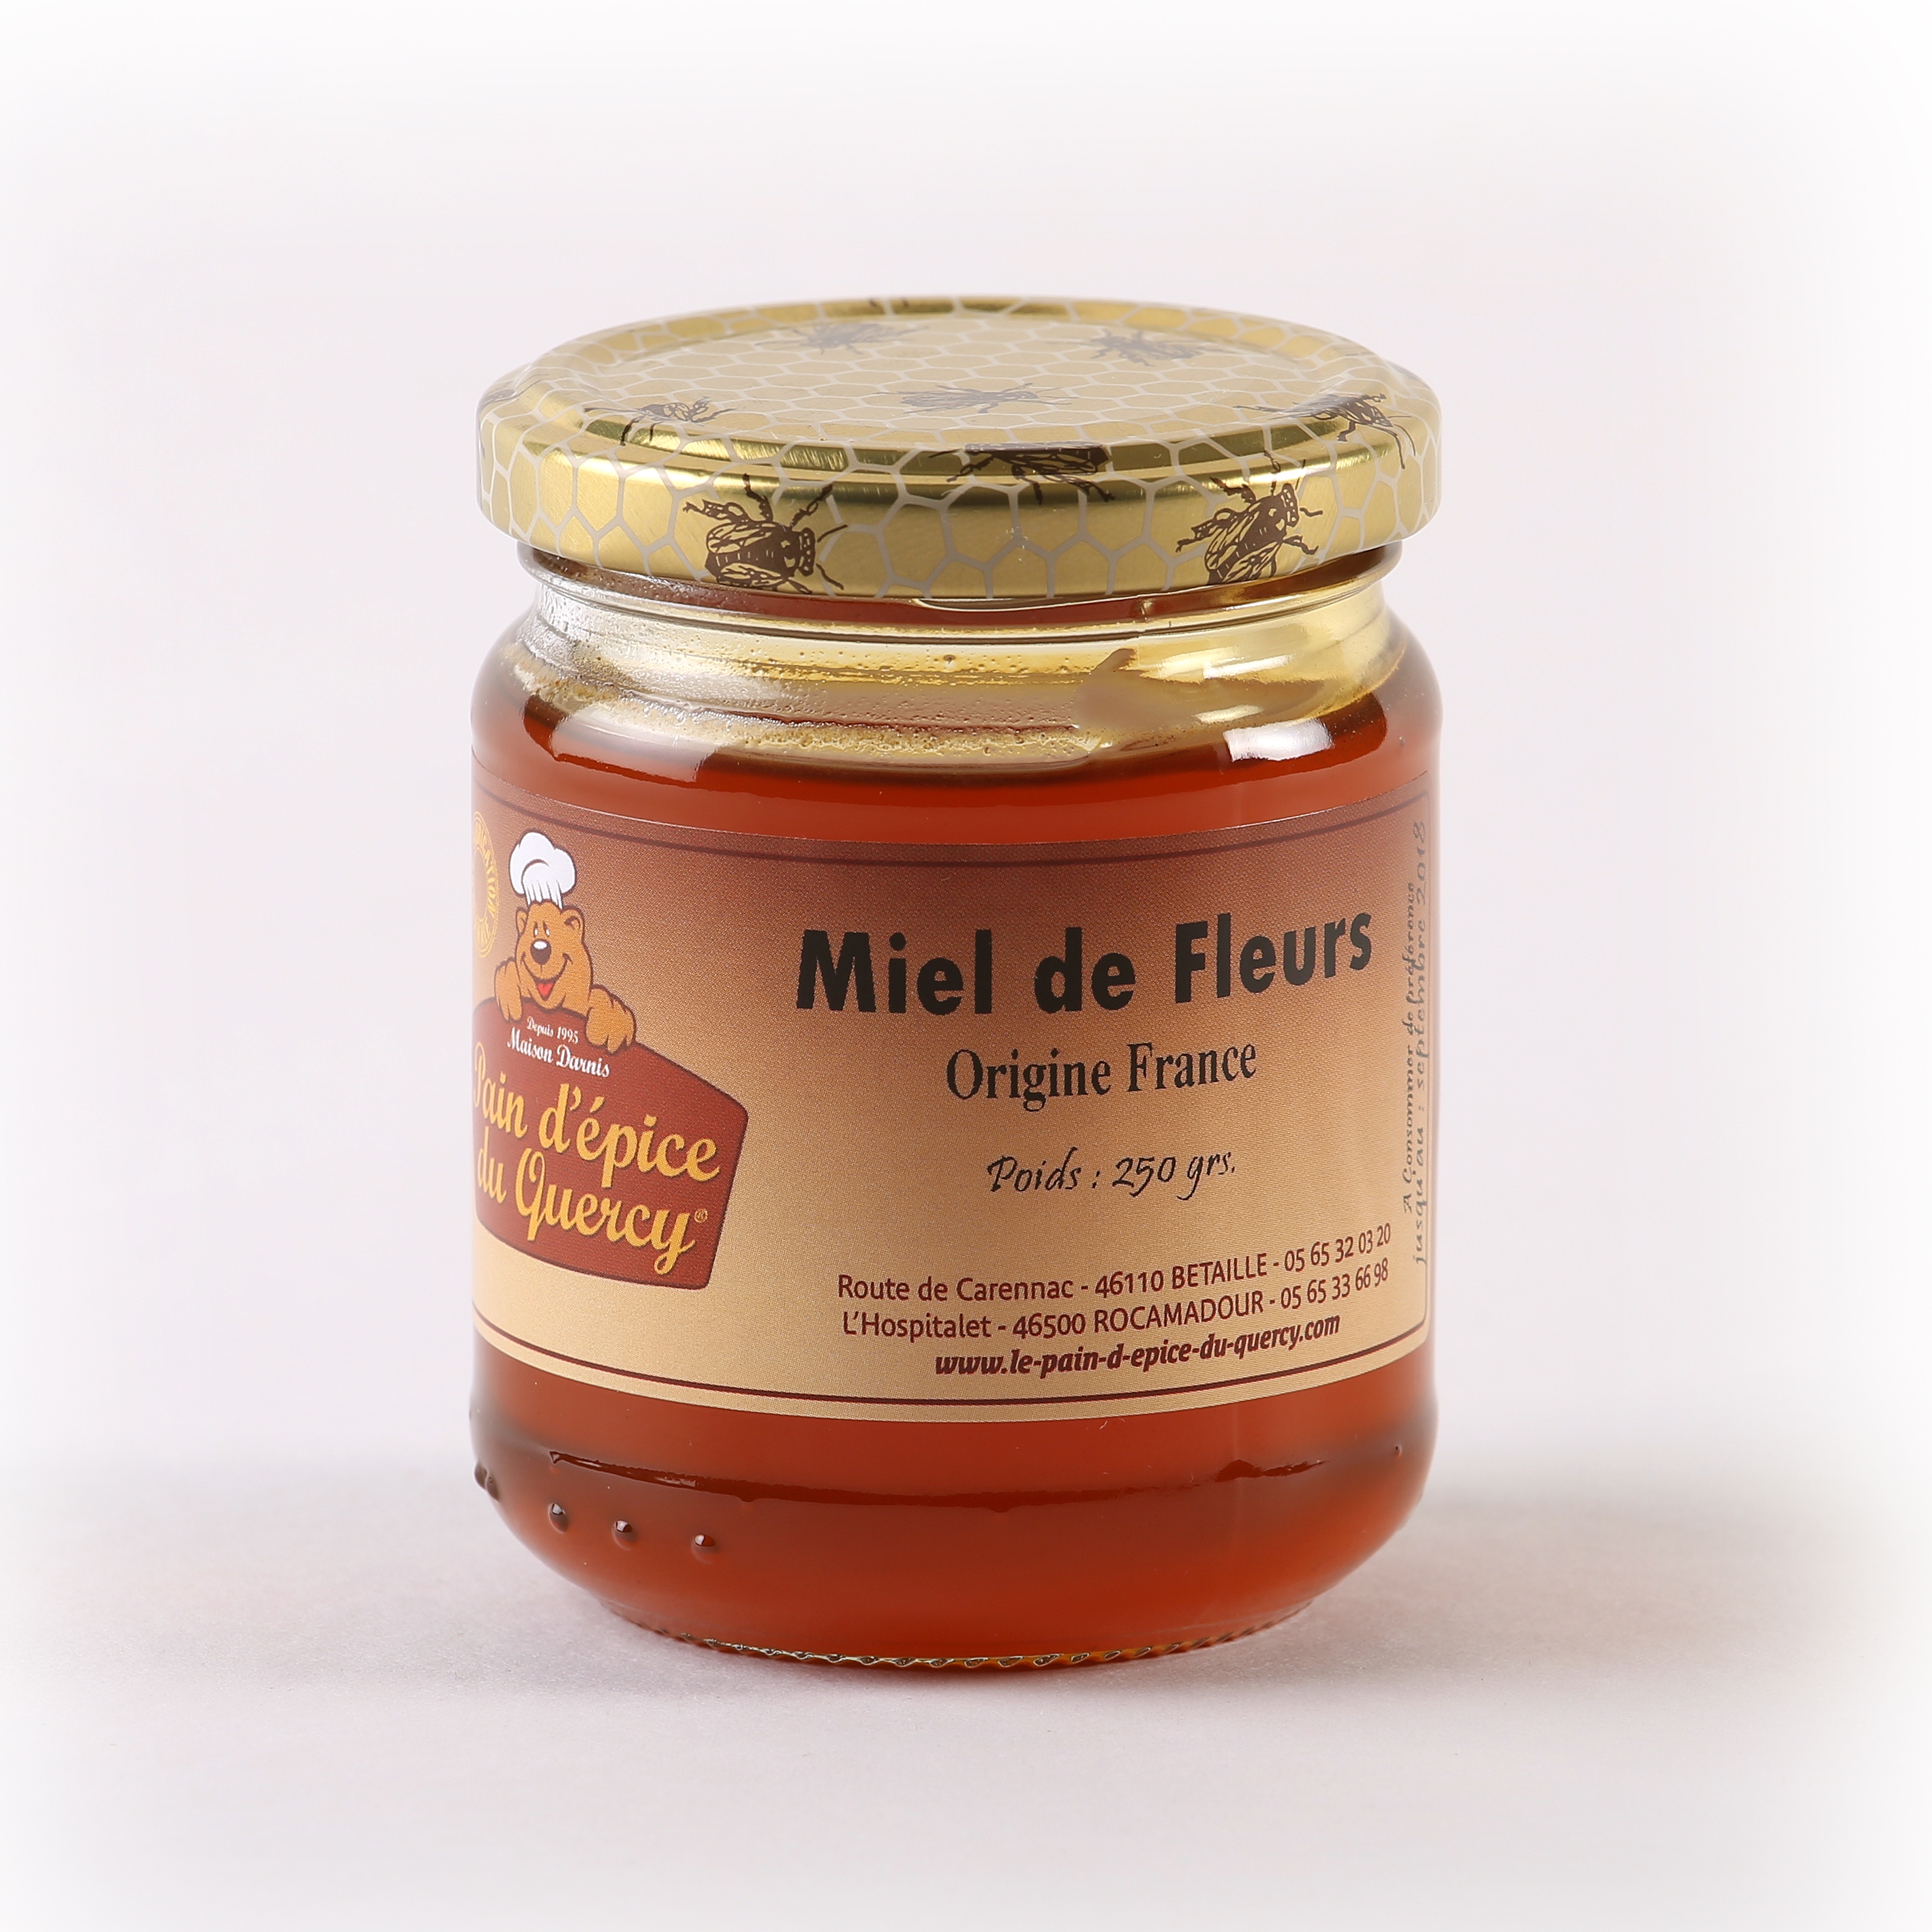 https://le-pain-d-epice-du-quercy.com/610/miel-de-fleursfrance-250-g-miels.jpg